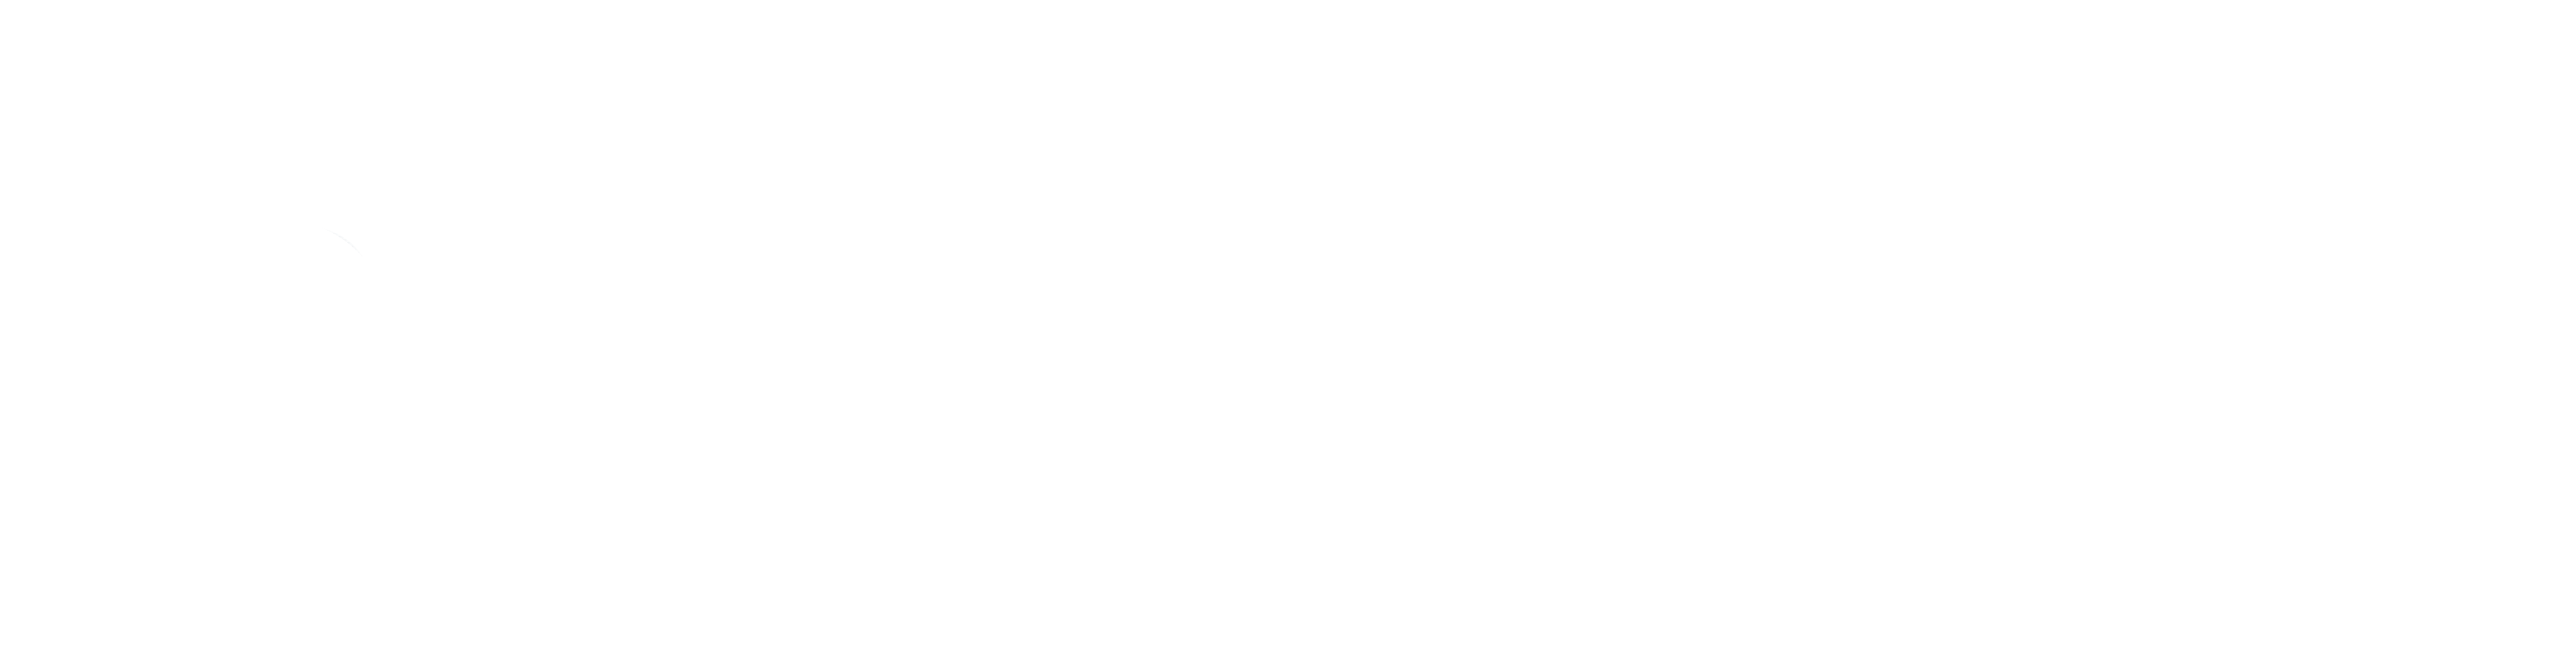 Irisa